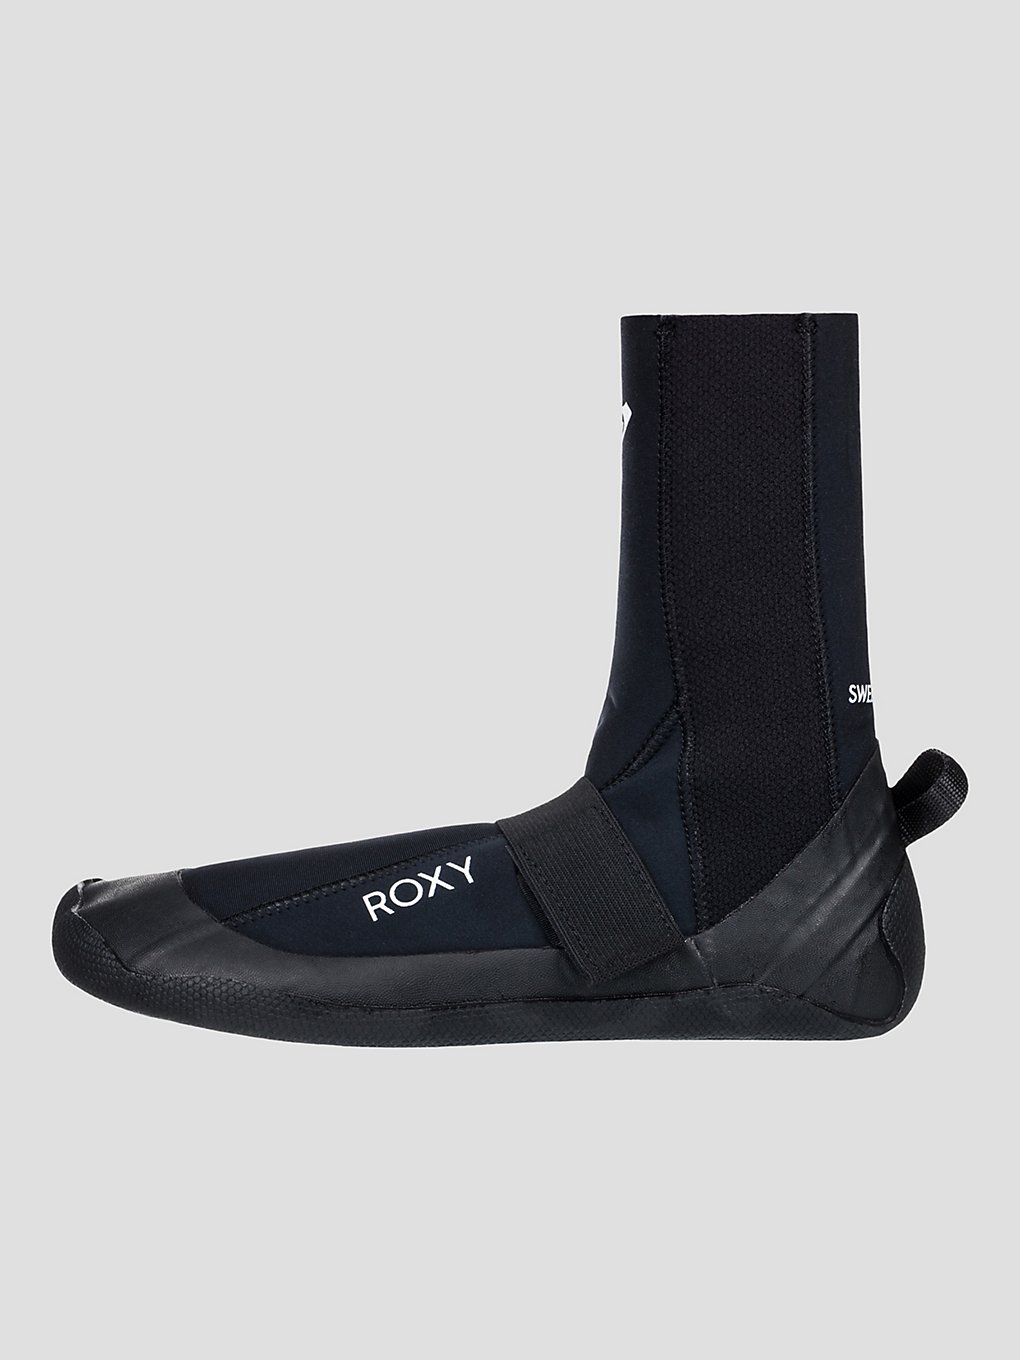 Roxy 3.0 Swell S Round Toe Surf schoenen zwart